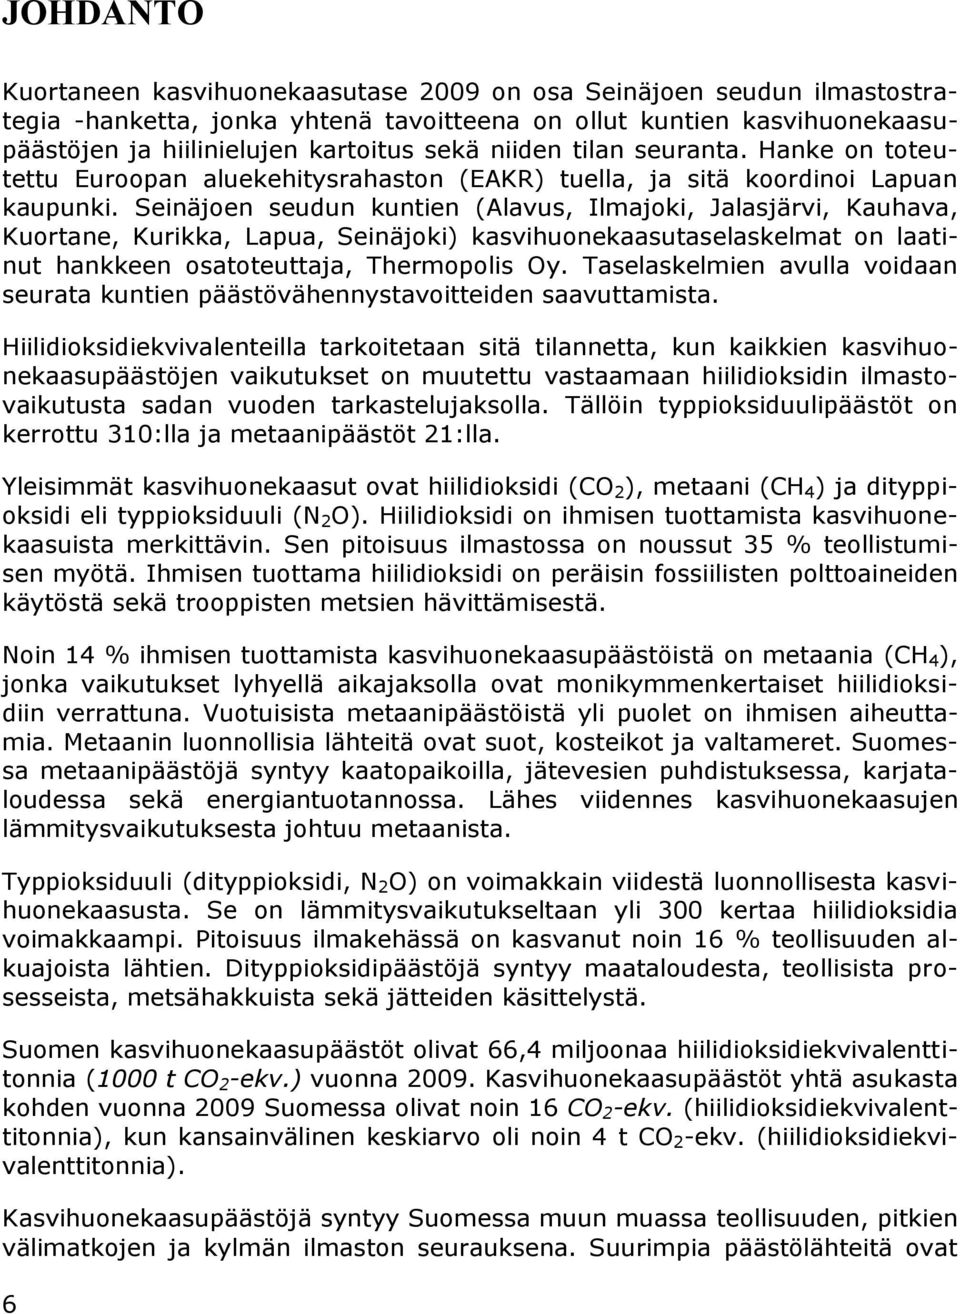 Seinäjoen seudun kuntien (Alavus, Ilmajoki, Jalasjärvi, Kauhava, Kuortane, Kurikka, Lapua, Seinäjoki) kasvihuonekaasutaselaskelmat on laatinut hankkeen osatoteuttaja, Thermopolis Oy.